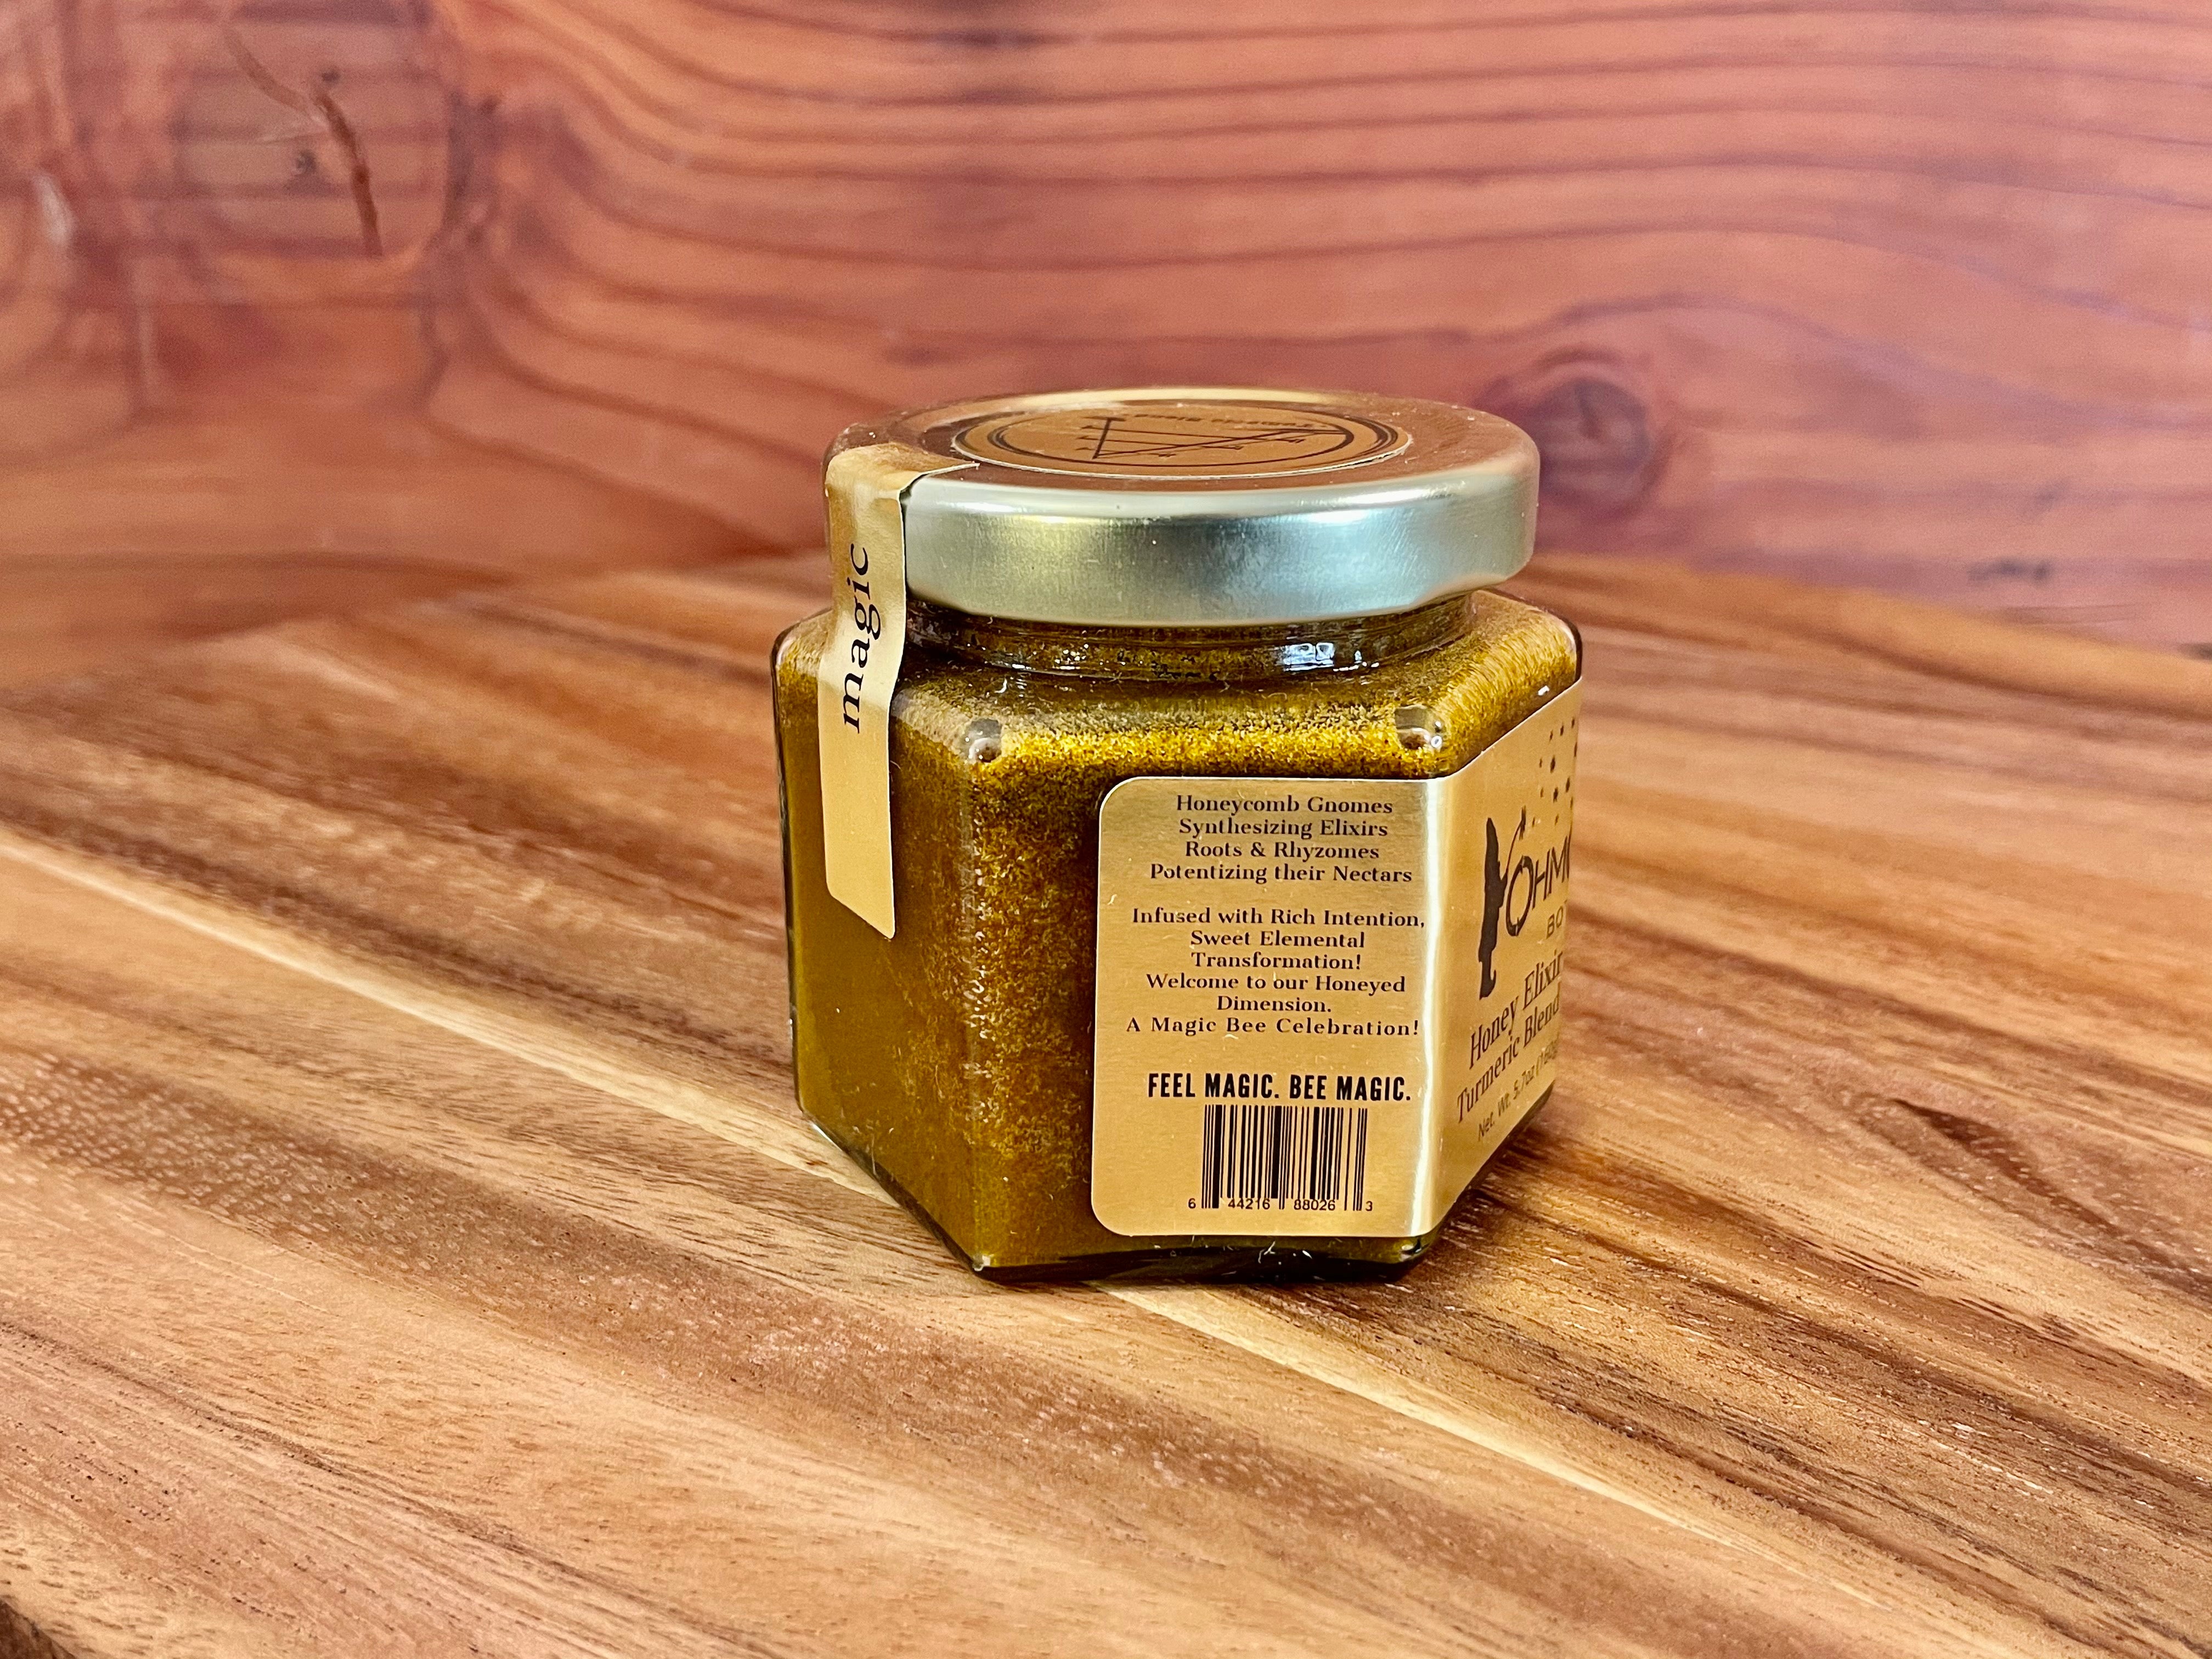 Honey Elixir - Turmeric Blend